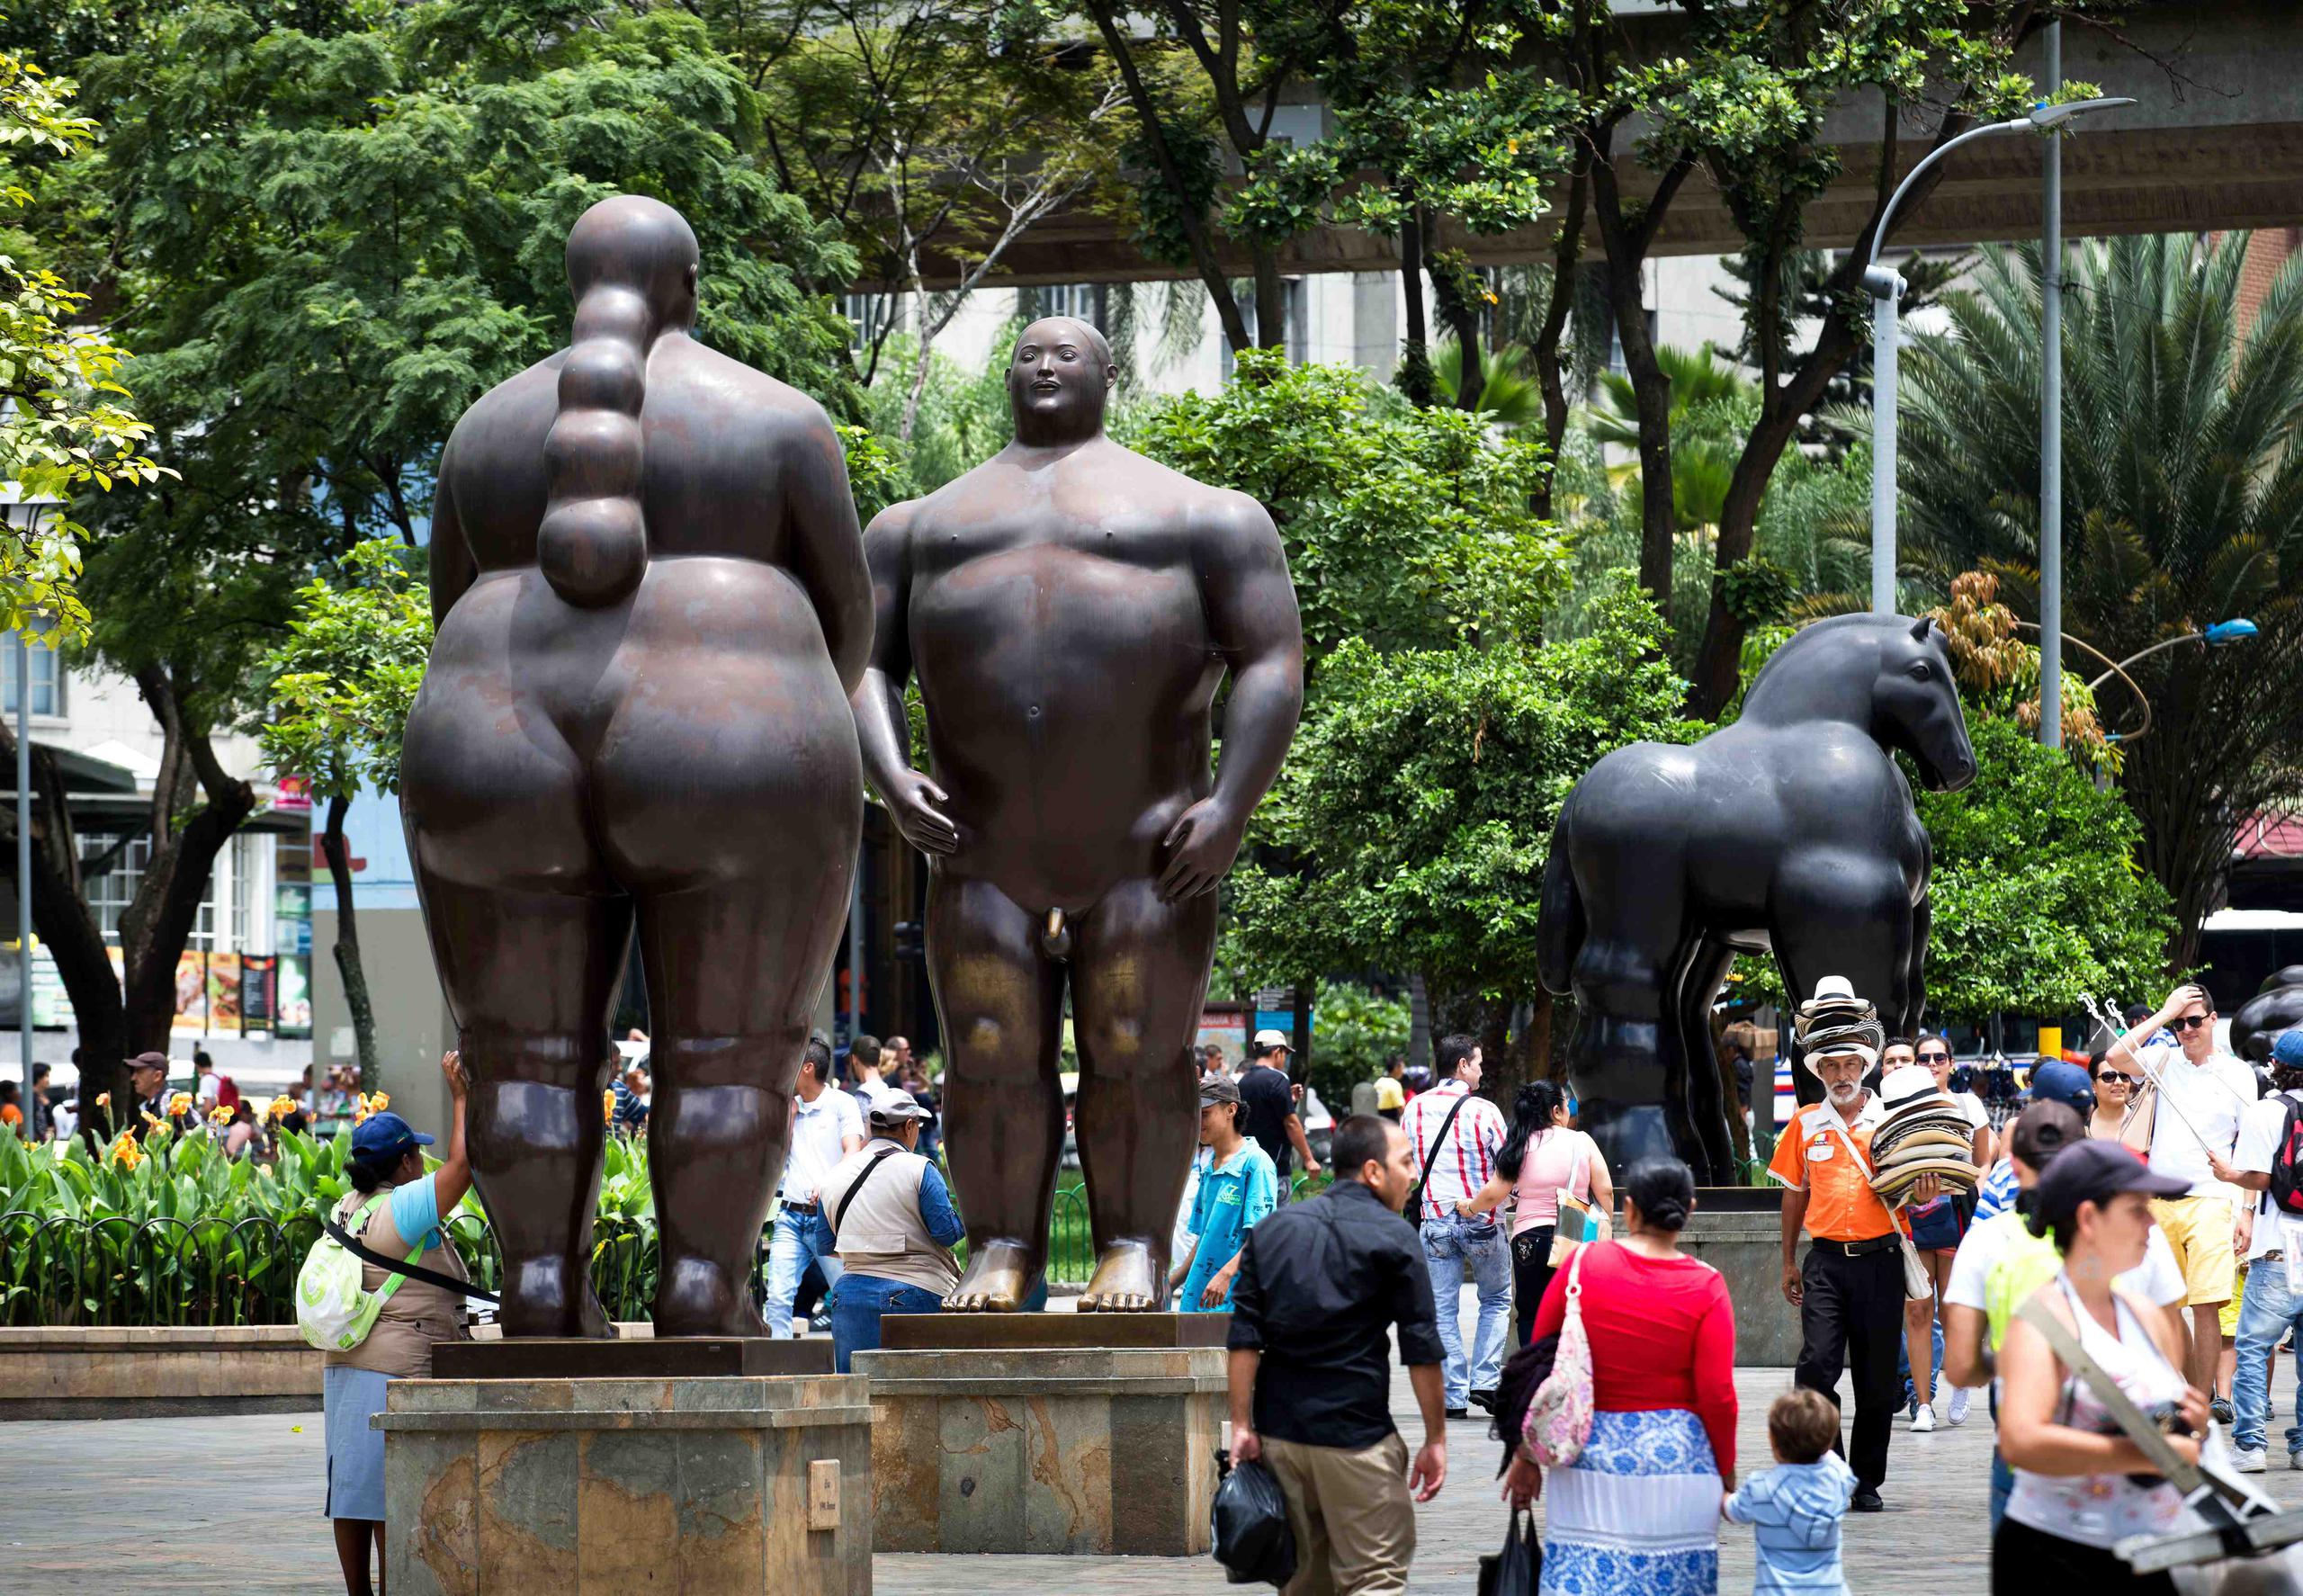 Llamativas esculturas te dan la bienvenida en la Plaza Botero, una joya de Medellín que se ha convertido en un museo al aire libre. (Foto: sunsinger / Shutterstock.com)